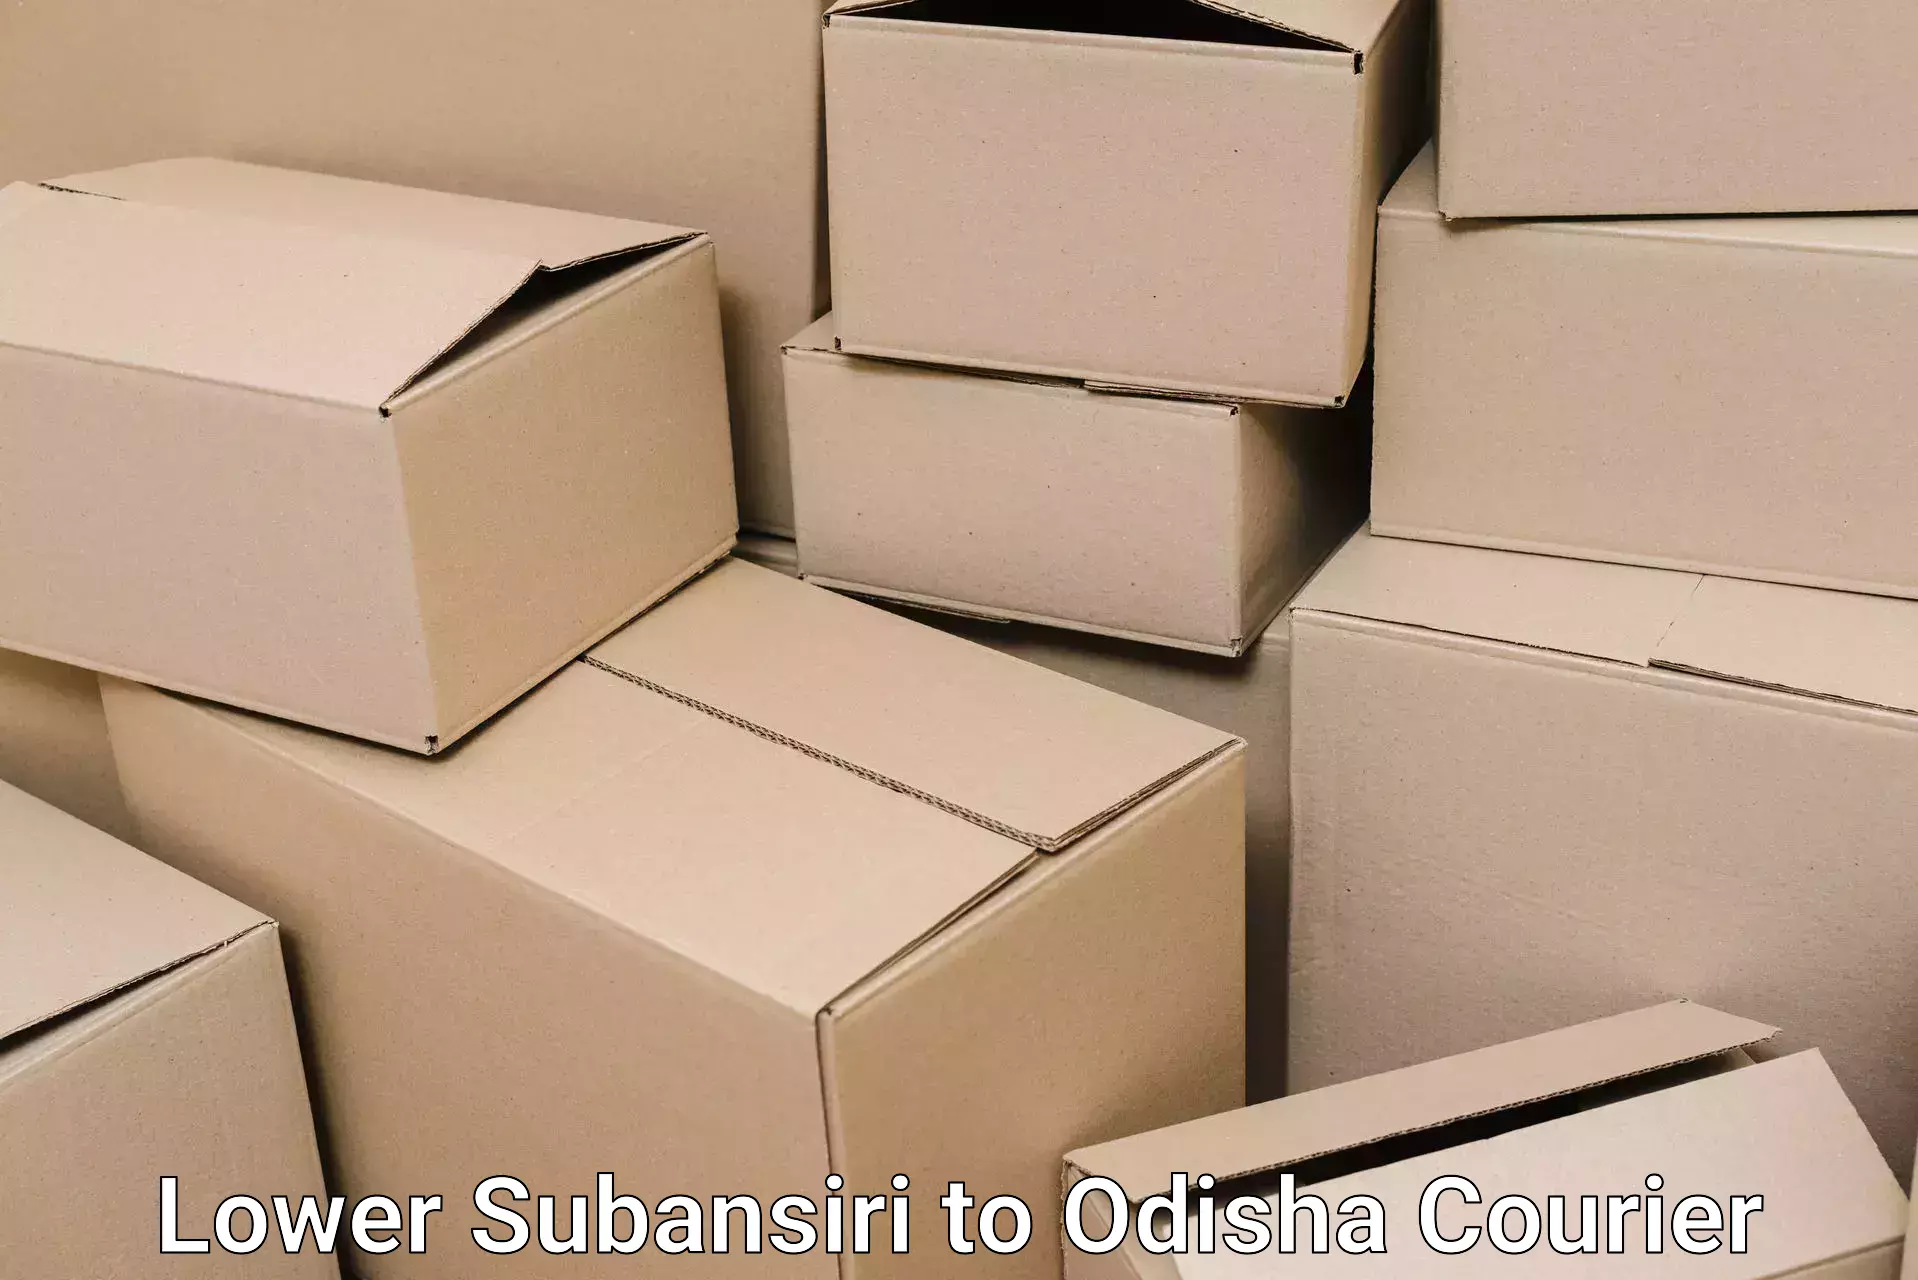 Furniture moving plans Lower Subansiri to Puri